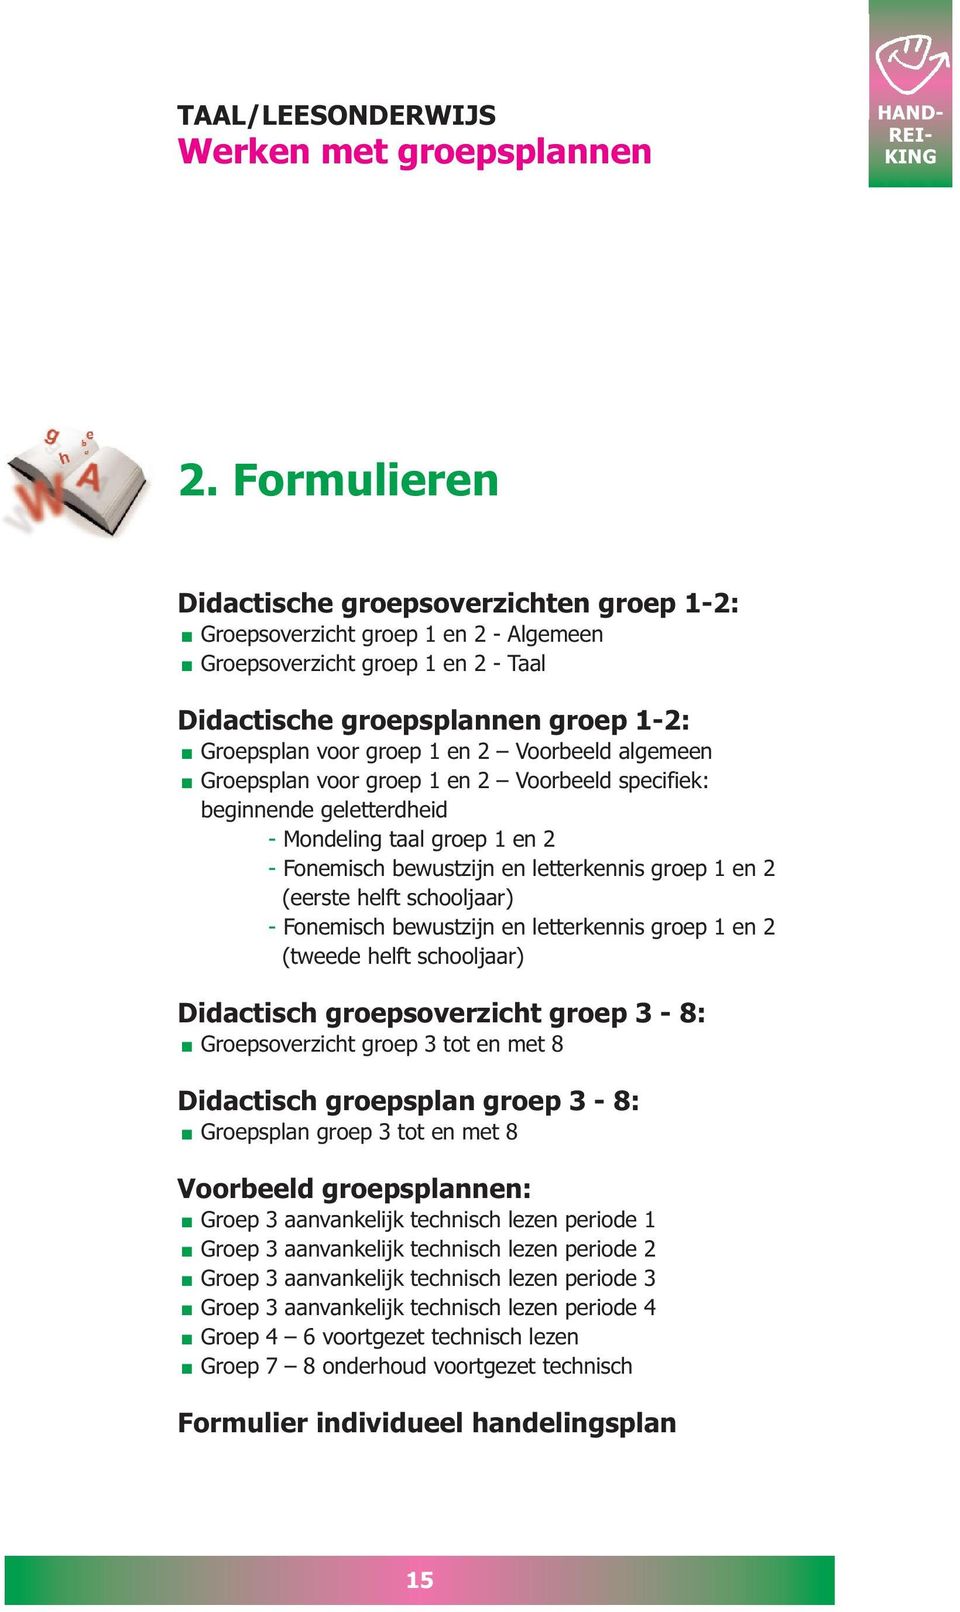 Voorbeeld algemeen Groepsplan voor groep 1 en 2 Voorbeeld specifiek: beginnende geletterdheid - Mondeling taal groep 1 en 2 - Fonemisch bewustzijn en letterkennis groep 1 en 2 (eerste helft